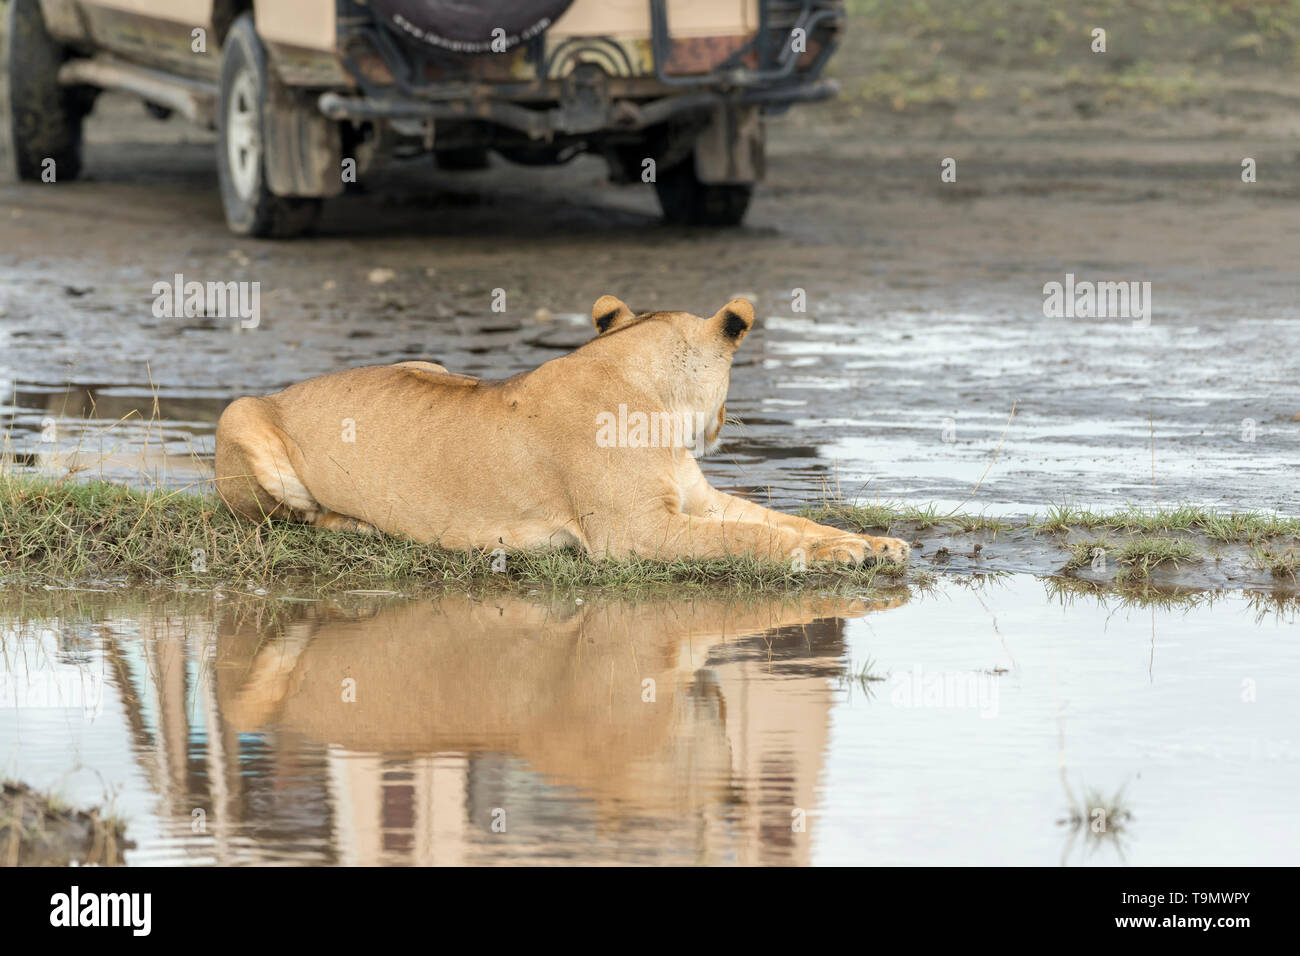 Lioness vs jeep with reflections, Lake Ndutu, Tanzania Stock Photo